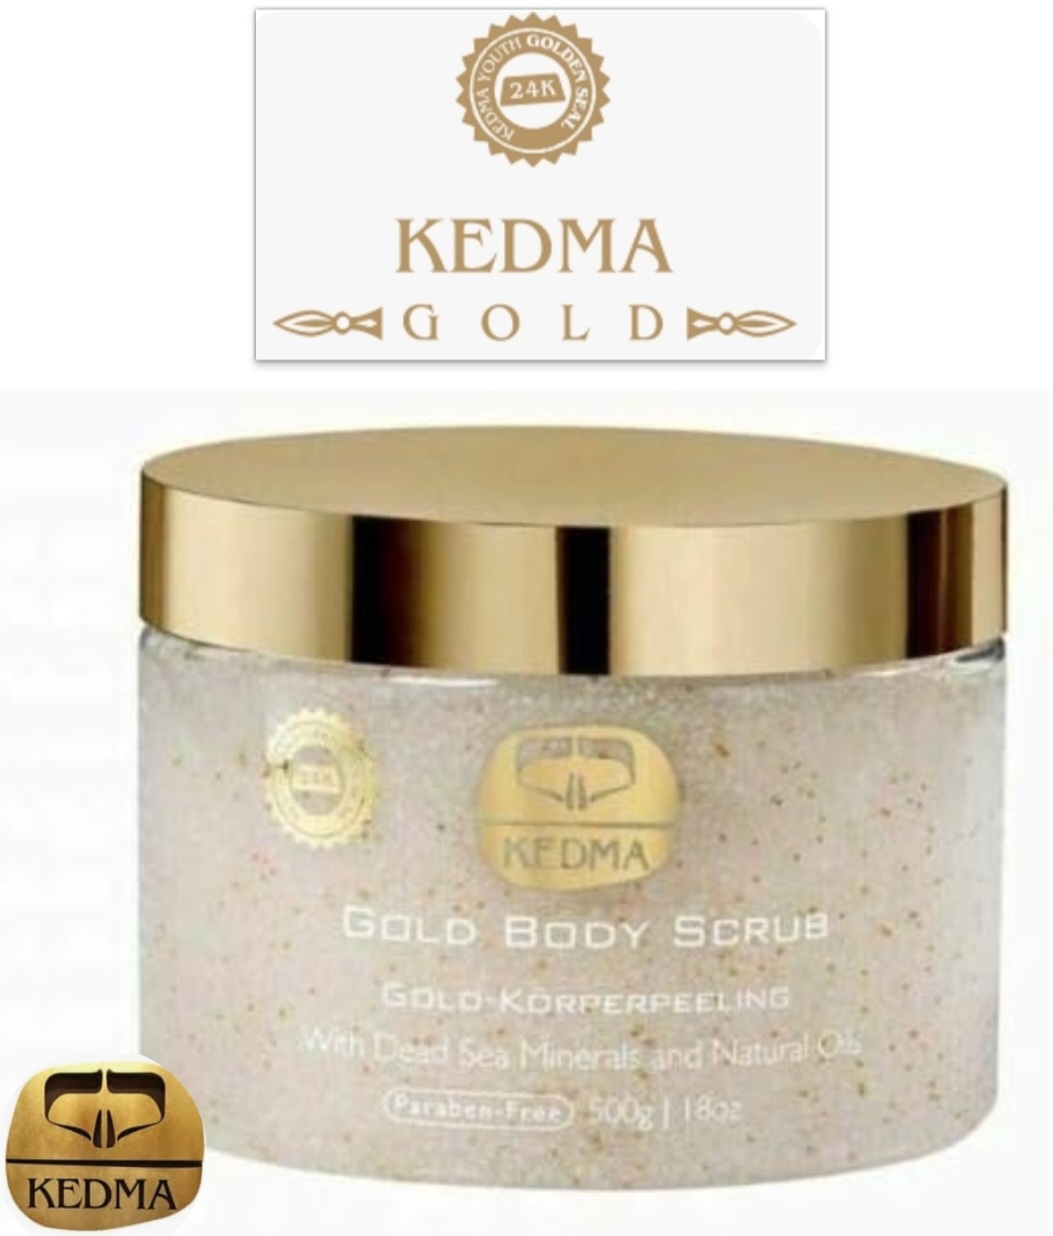 Kedma: 23k Gold Spa Kit; Gold Body Scrub & Body Butter Set: RRP £159